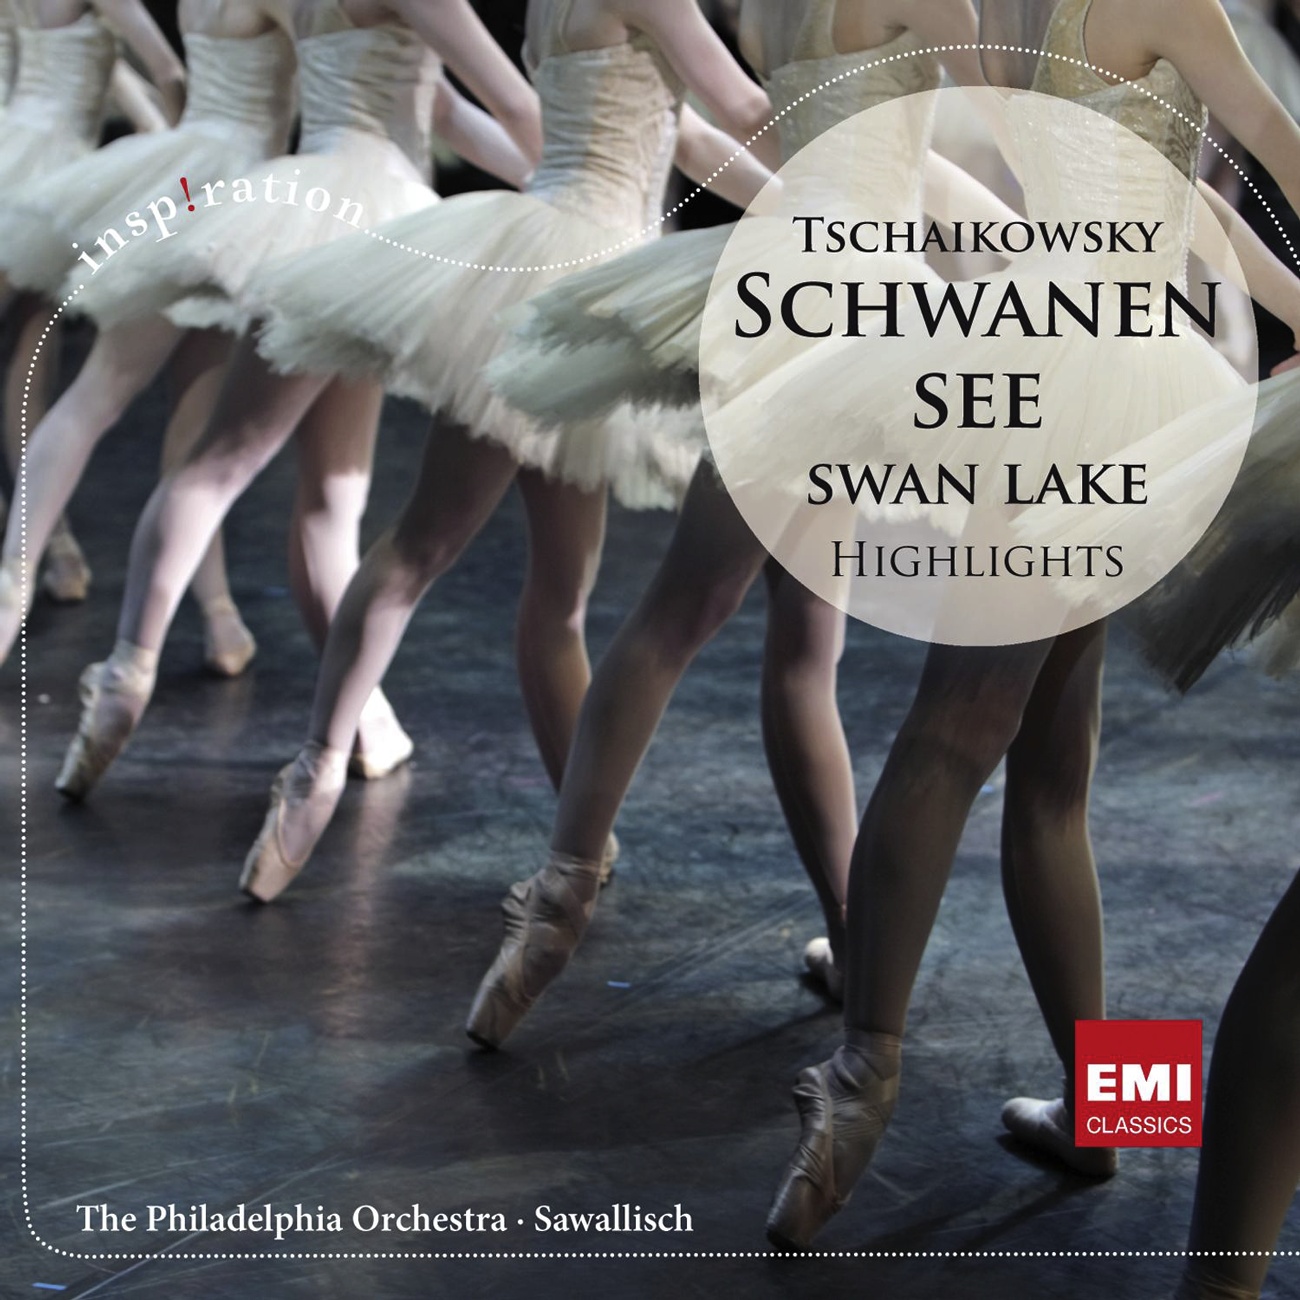 Swan Lake - Ballet in four acts Op. 20, ACT 3: No. 21 - Danse espagnole (Allegro non troppo [Tempo di bolero])